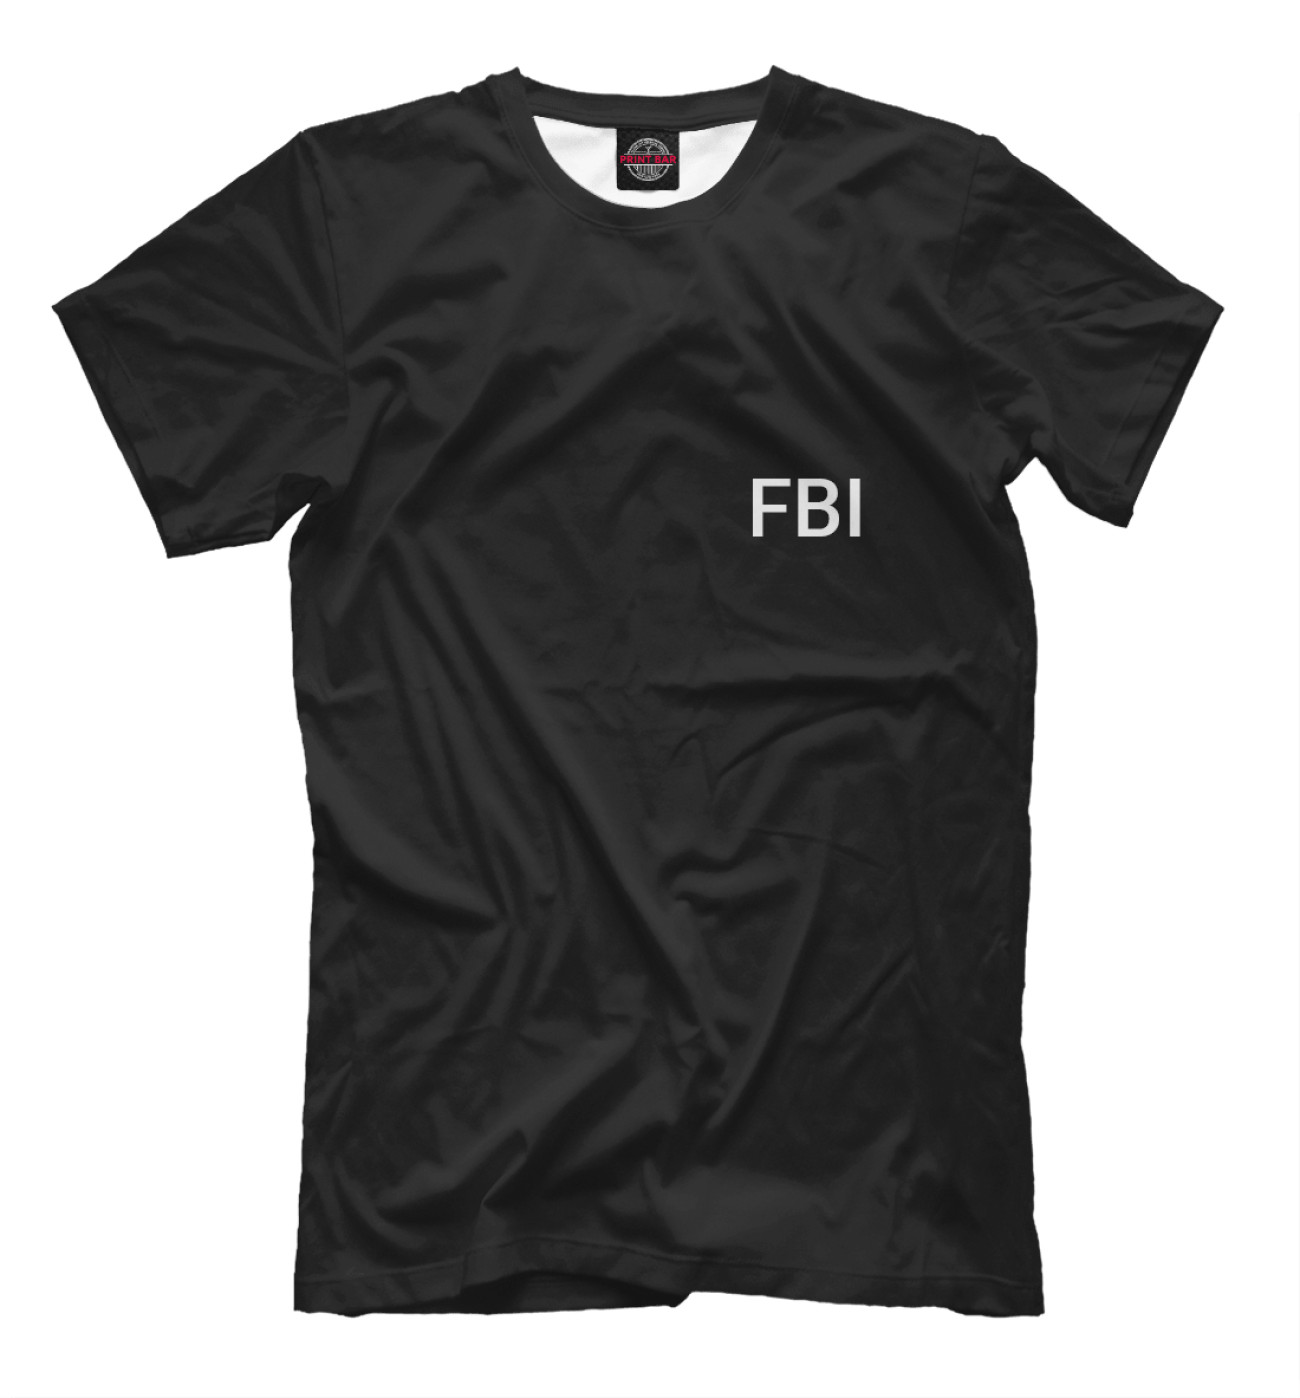 Мужская Футболка FBI, артикул: FBI-334336-fut-2